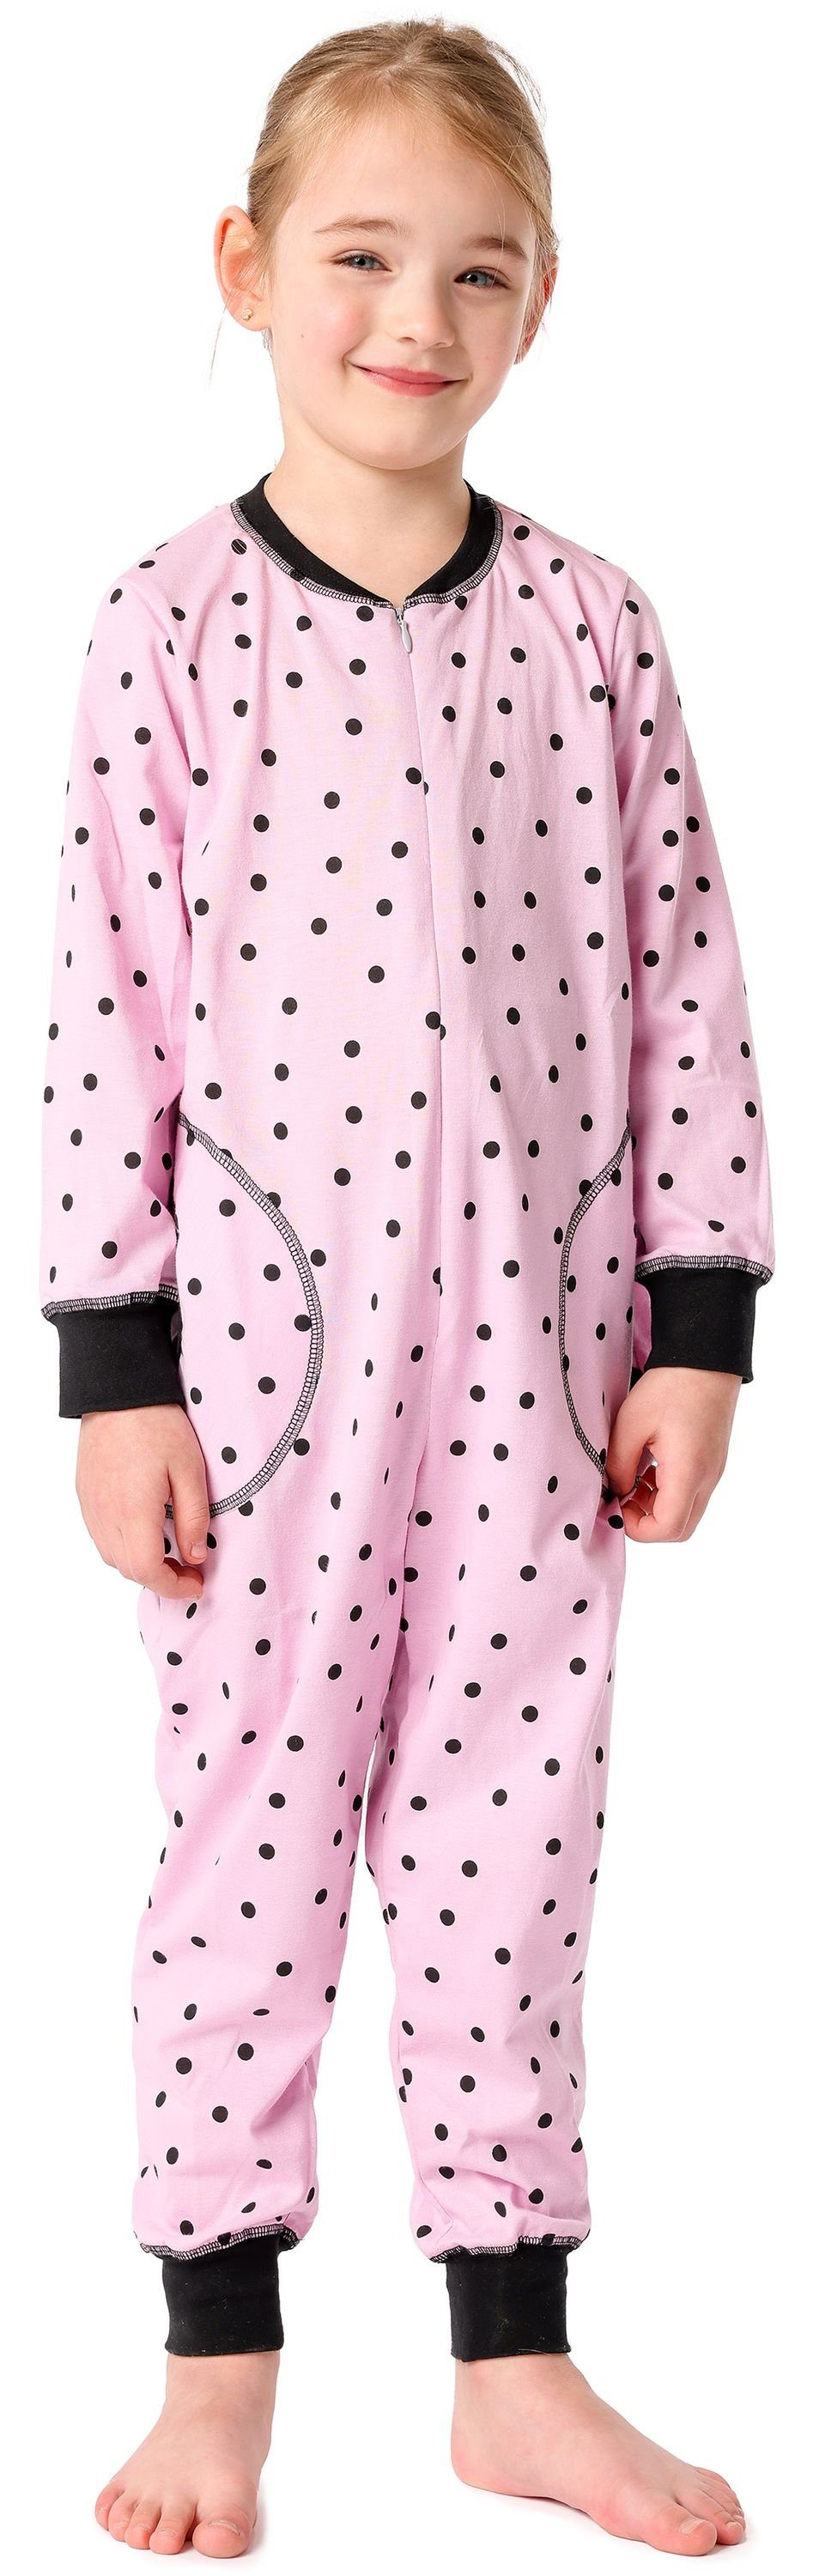 Merry Style Schlafanzug Mädchen Schlafanzug Jumpsuit MS10-186 Rosa Punkte Schwarz